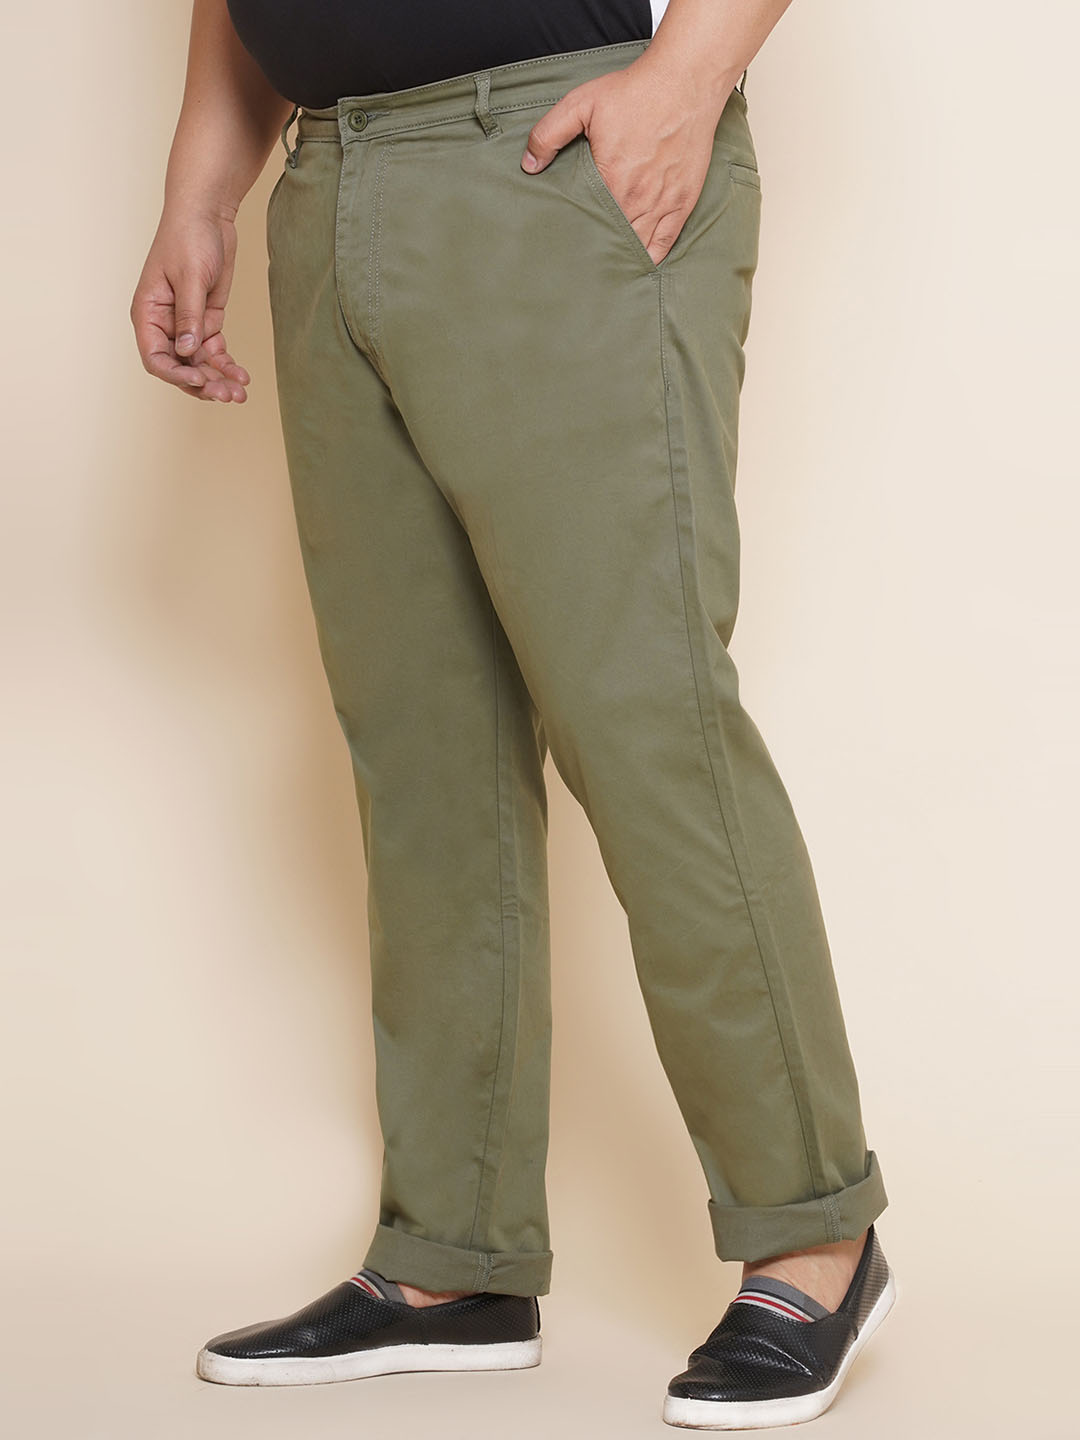 bottomwear/trousers/JPTR21011/jptr21011-3.jpg